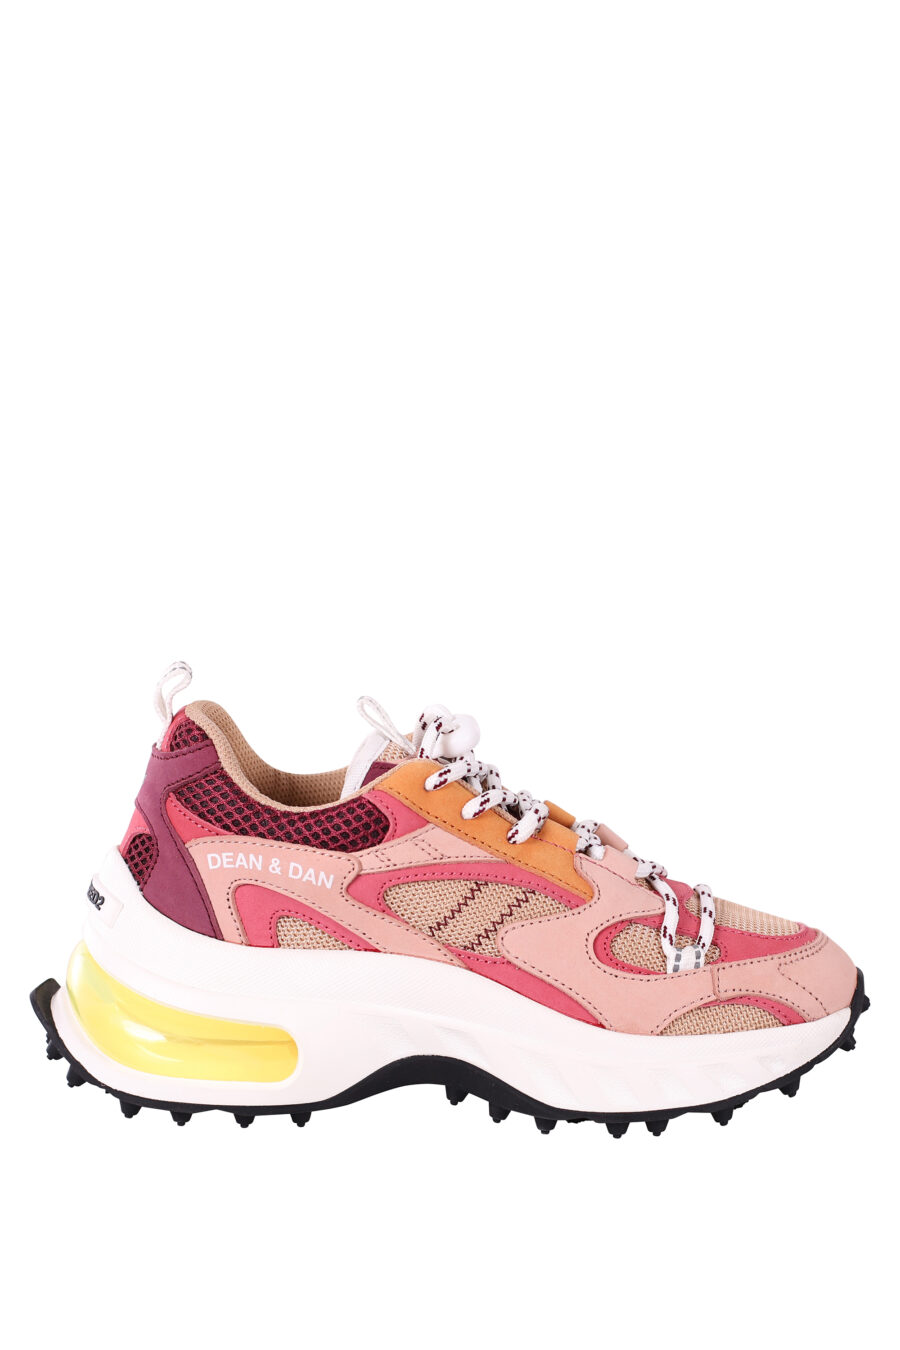 Zapatillas multicolor rosa con camara de aire amarilla - IMG 5832